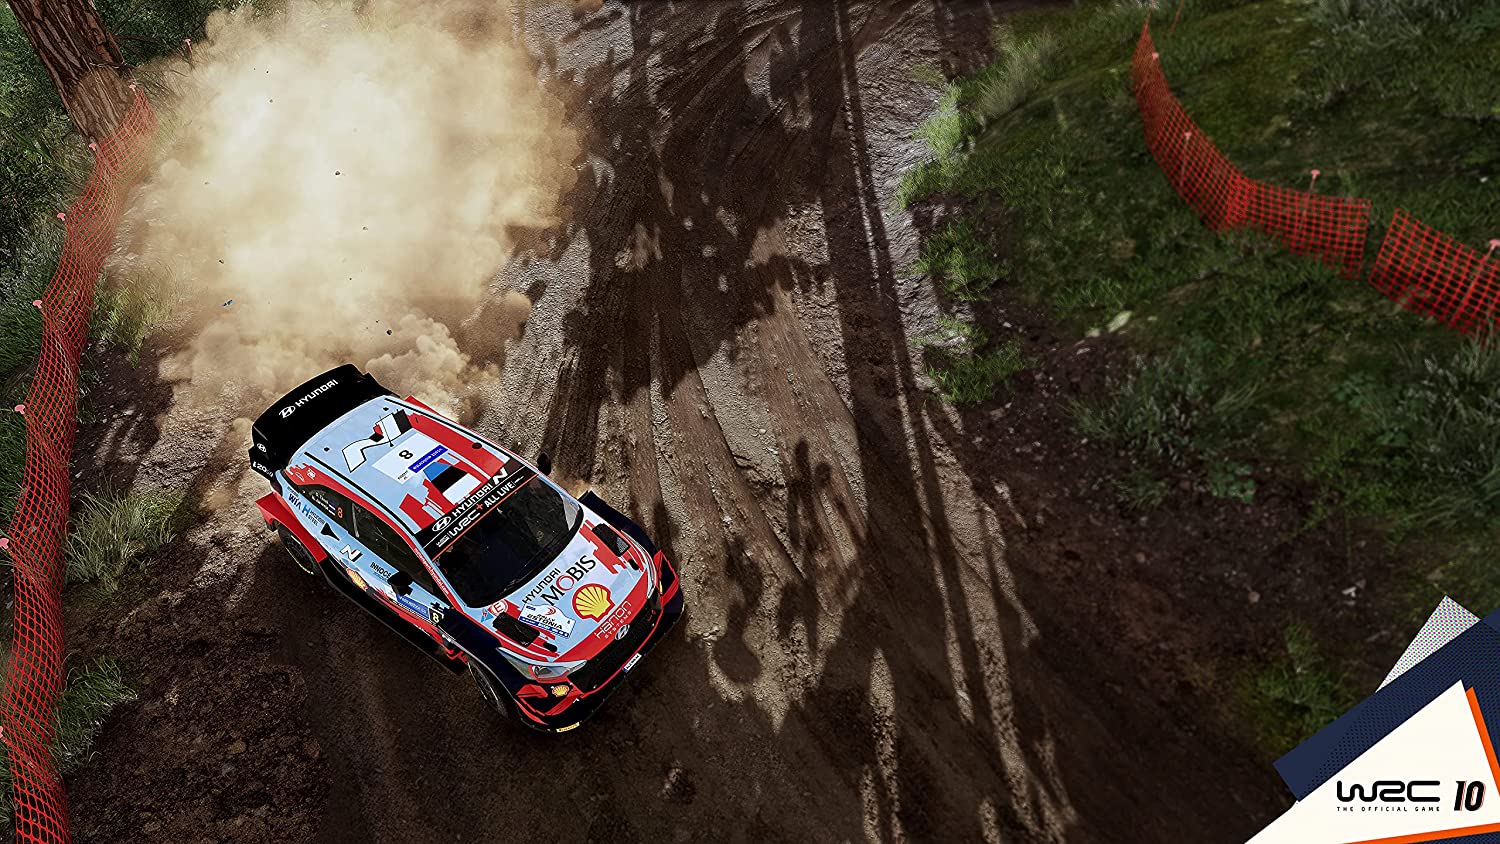 WRC 10 PS4 